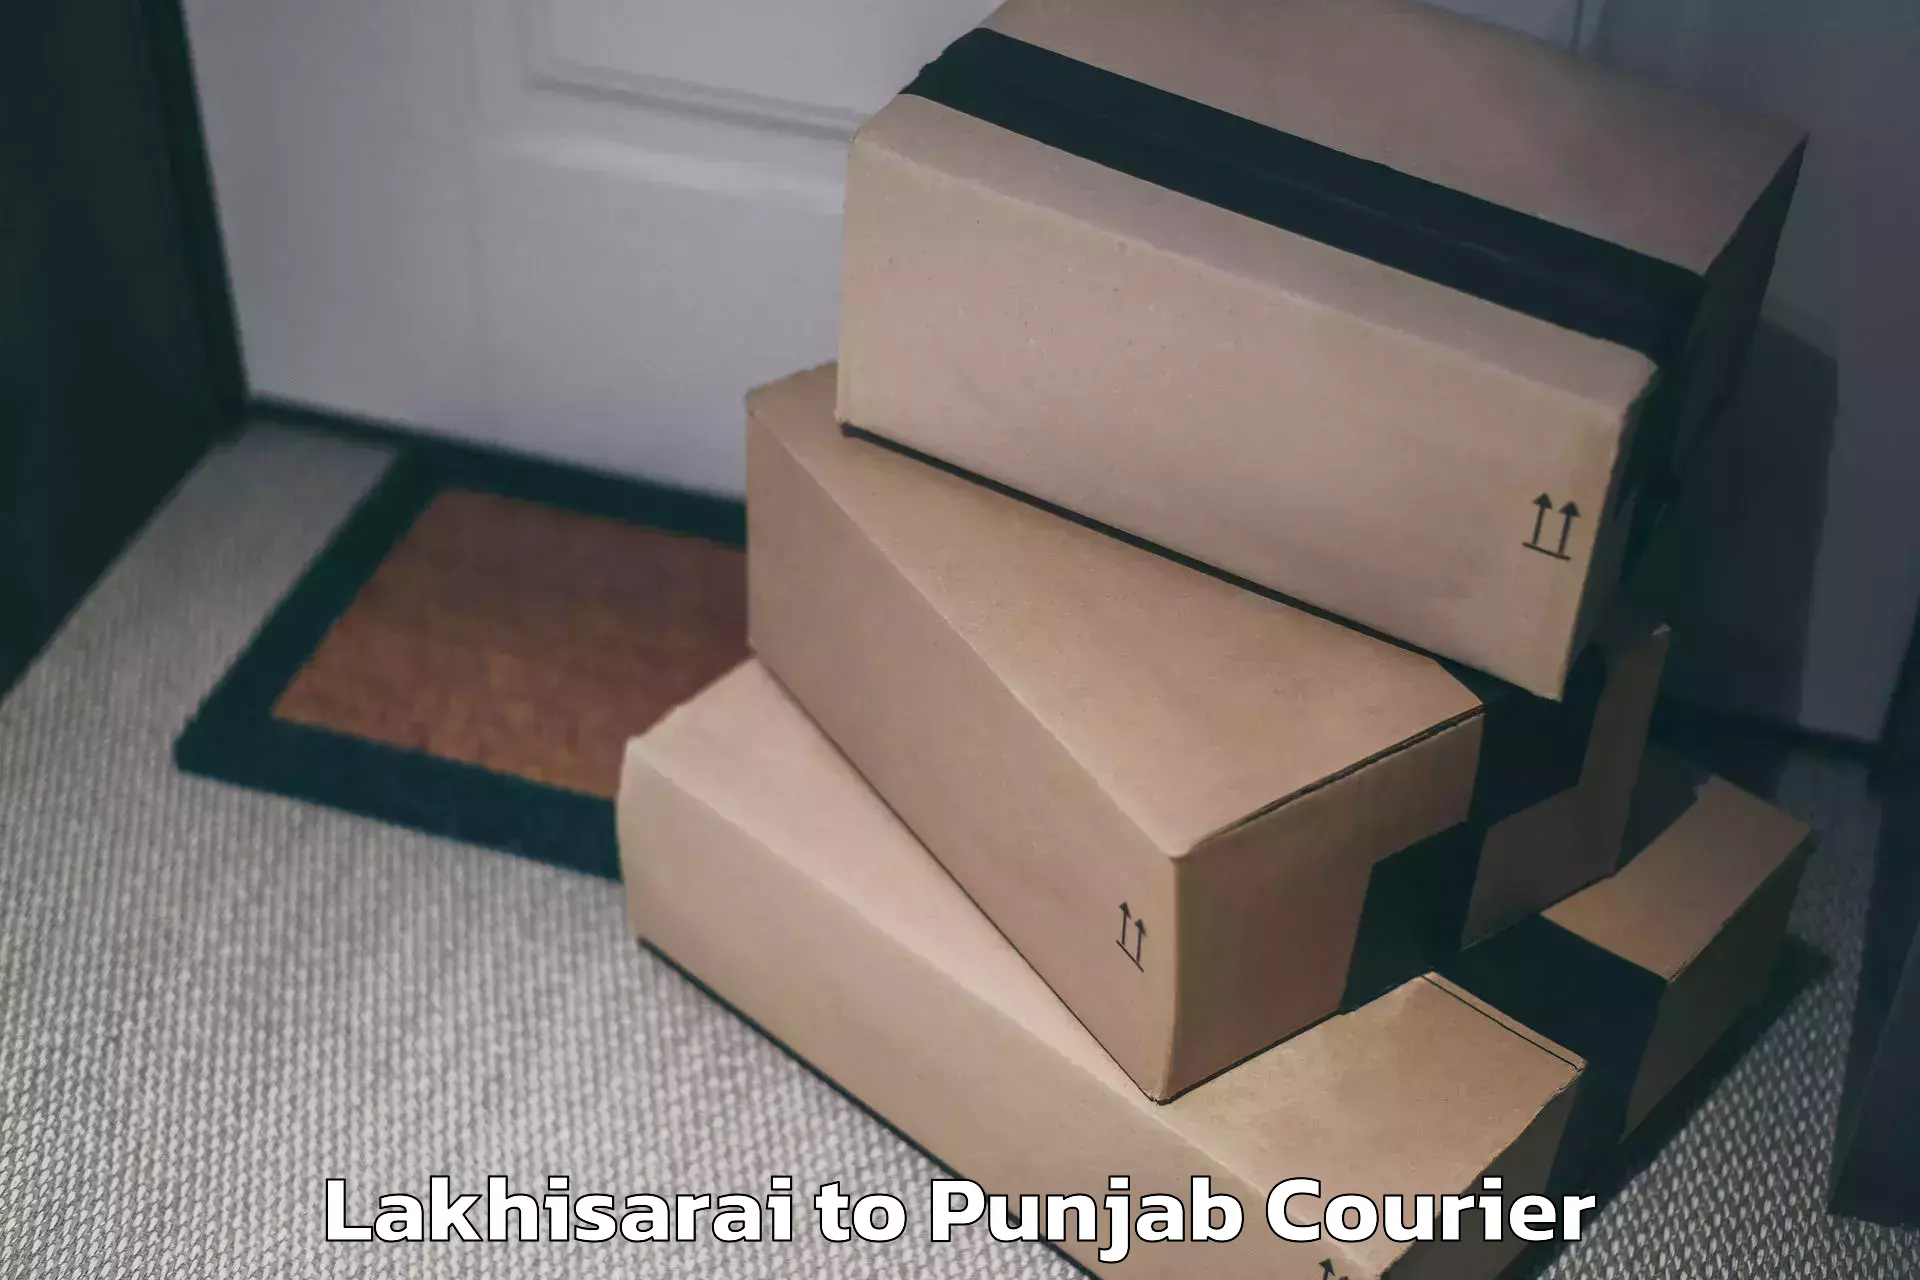 Luggage dispatch service Lakhisarai to Dera Bassi